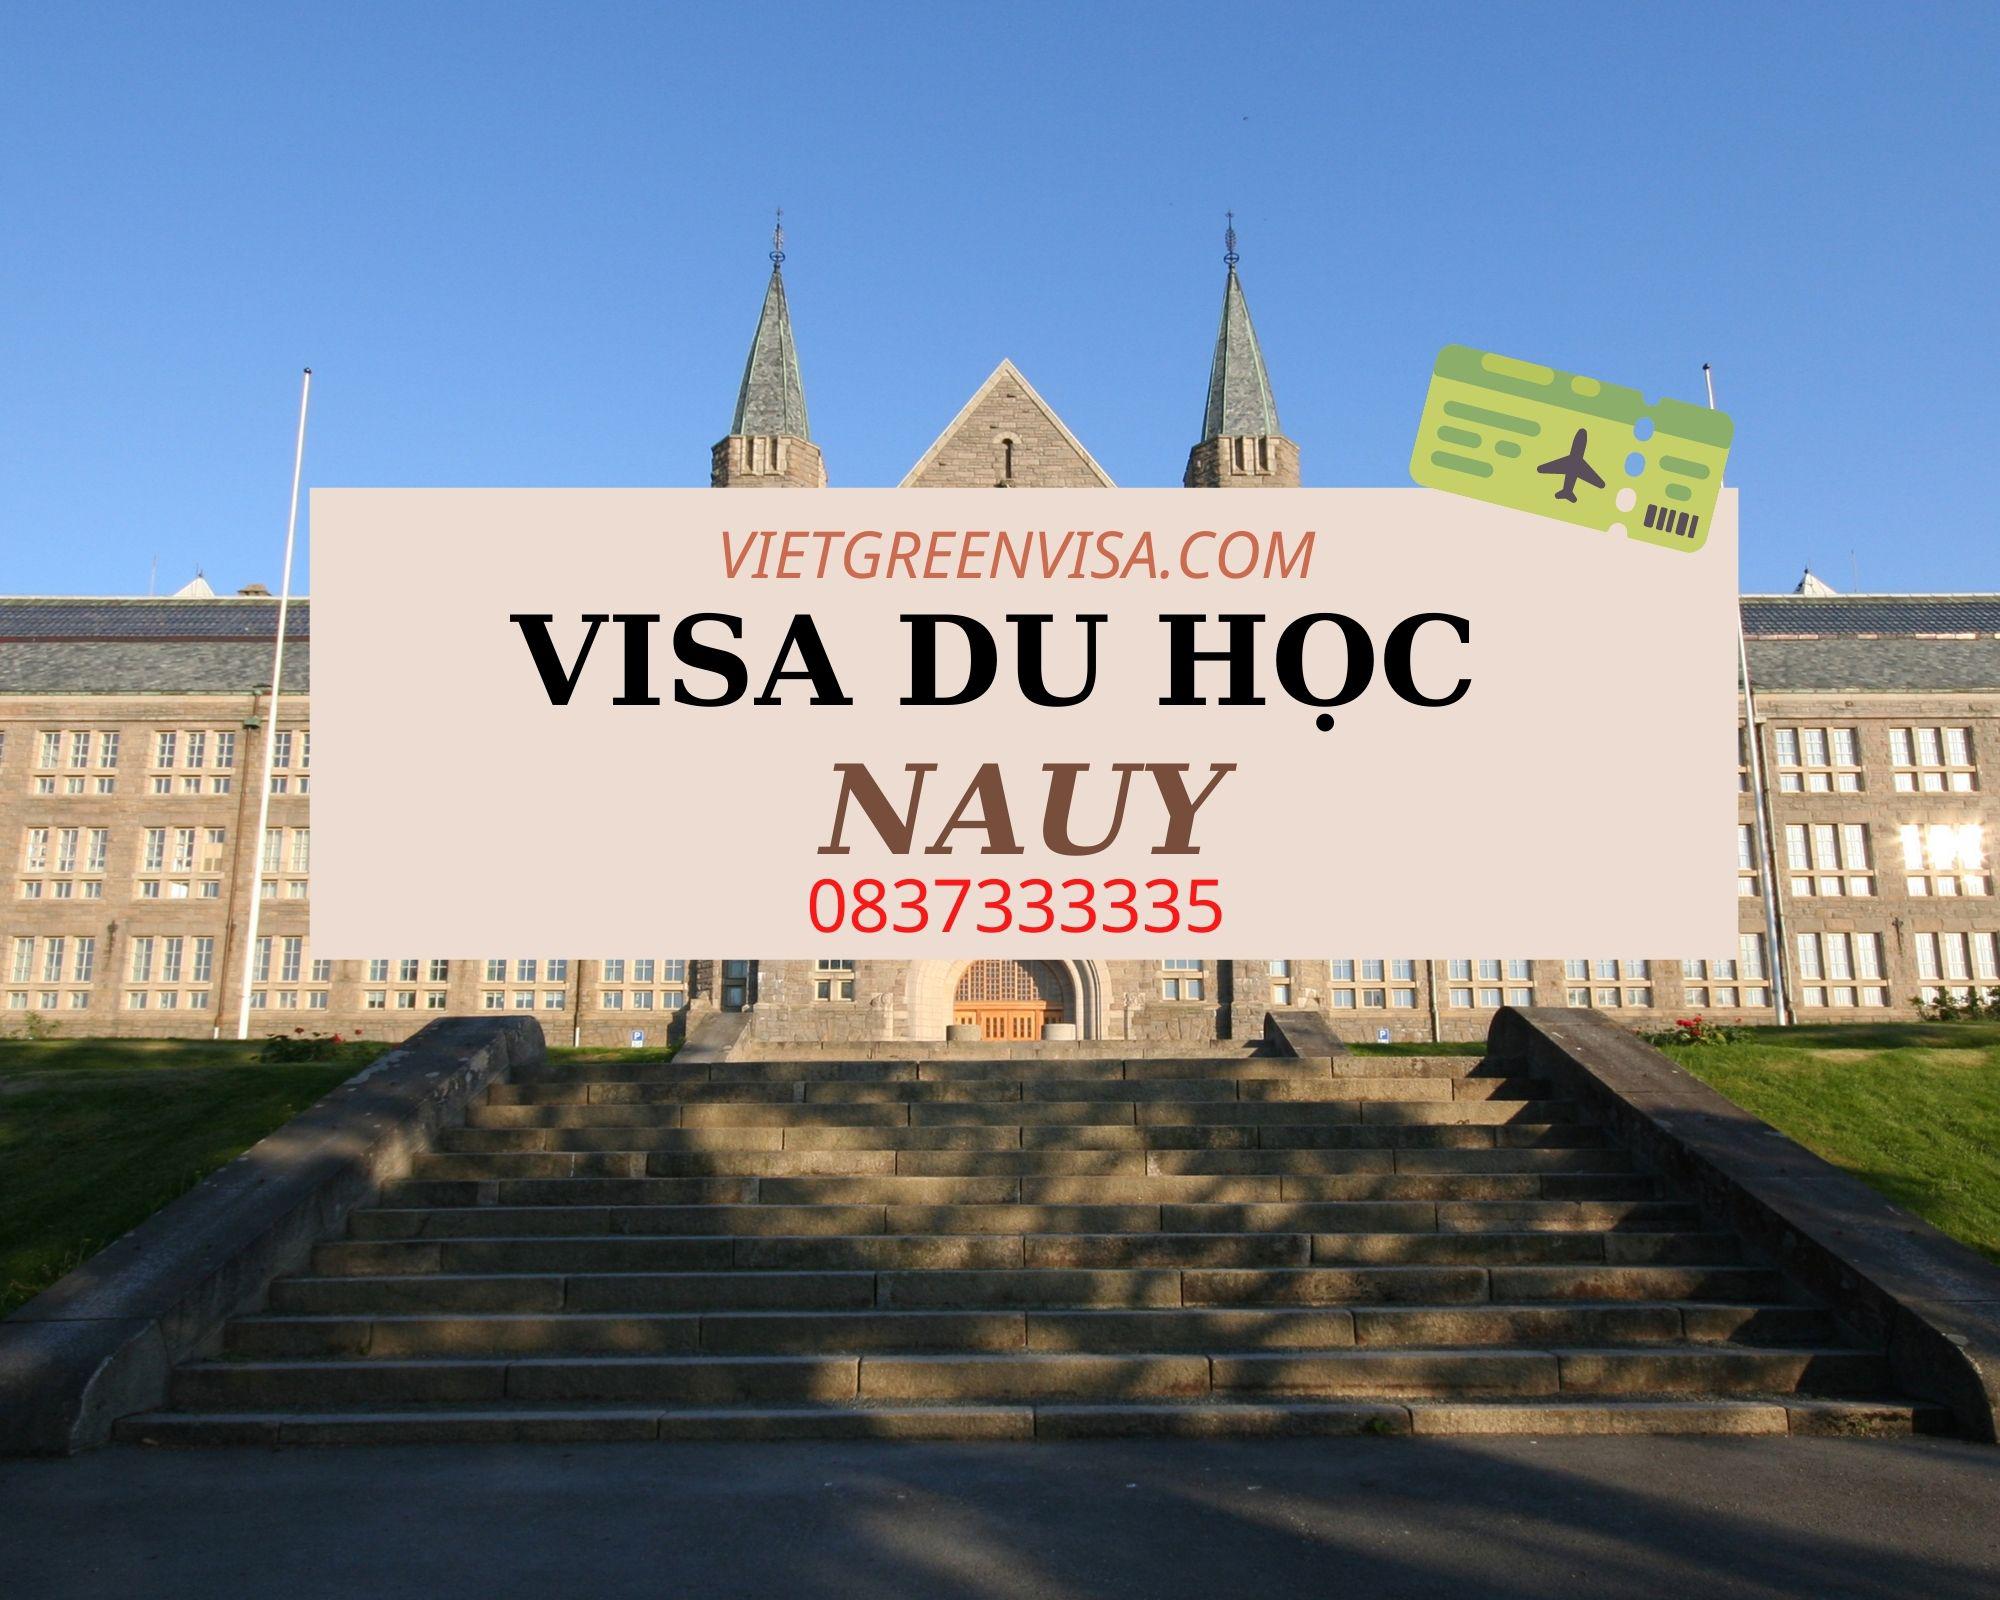 Dịch vụ xin visa du học ở Nauy nhanh rẻ, bao đậu đến 99%